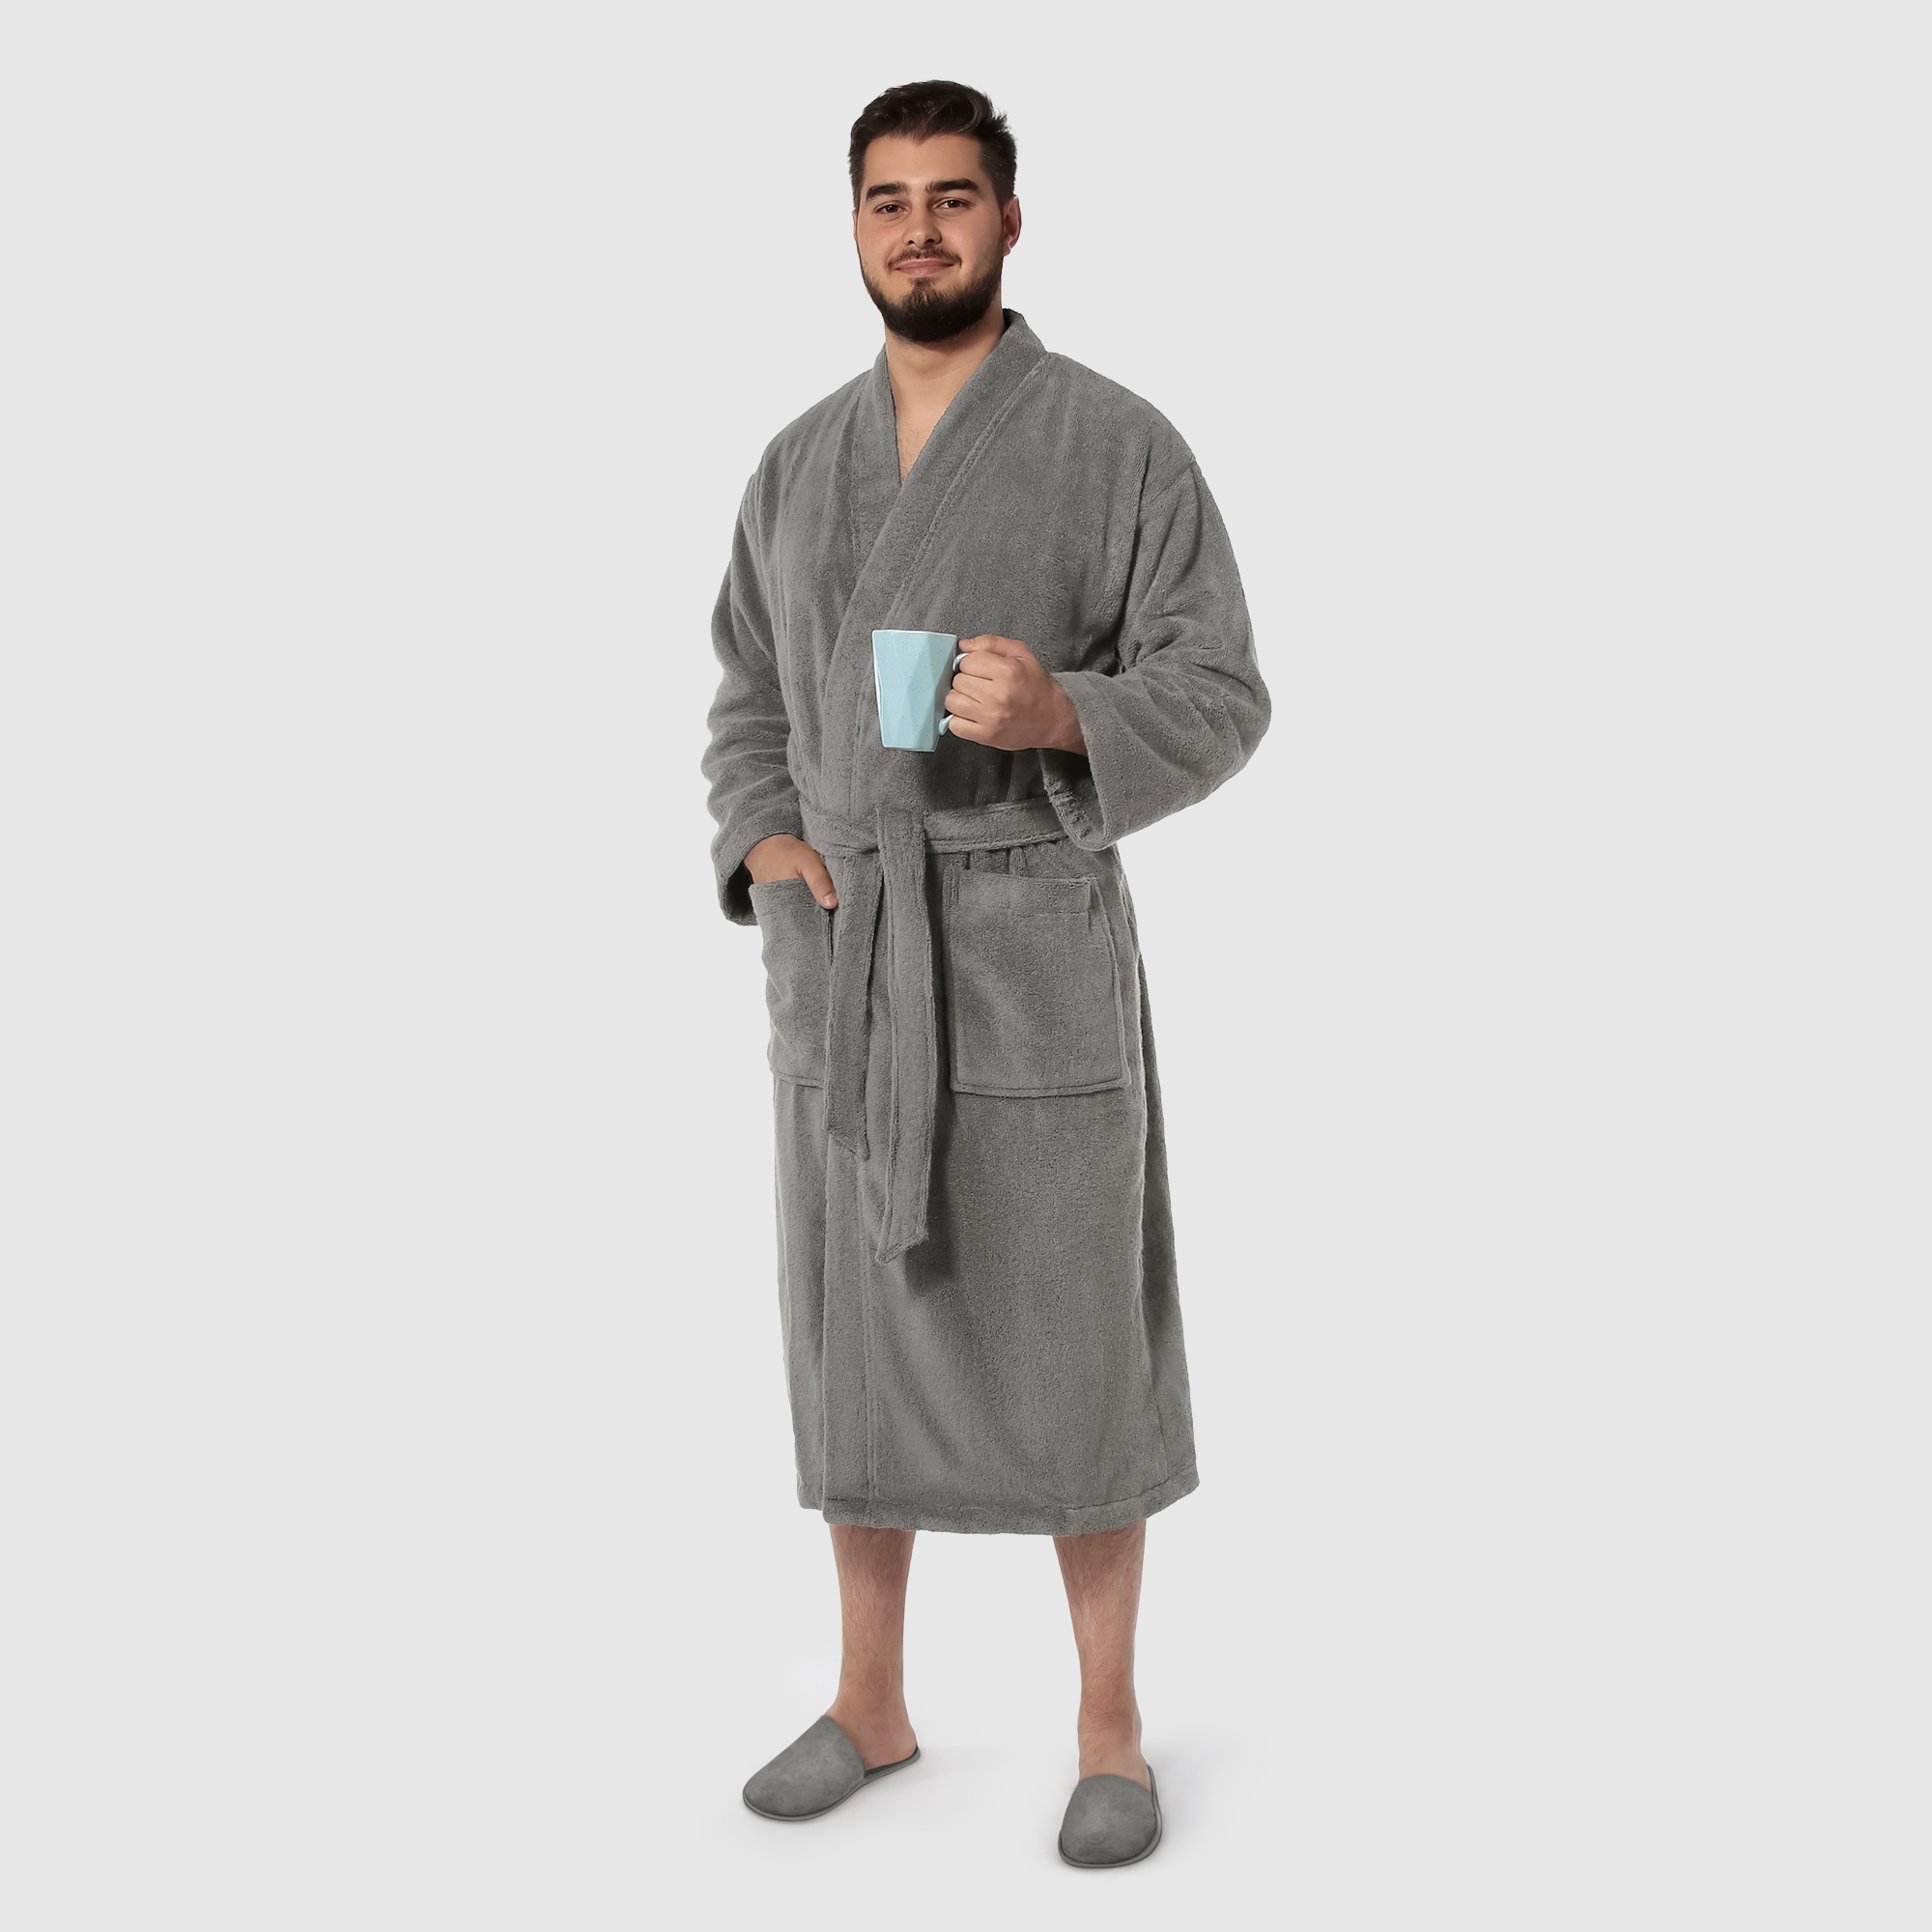 Мужской халат Maisonette Parla светло-серый XL халат мужской asil sauna brown xxl вафельный с капюшоном